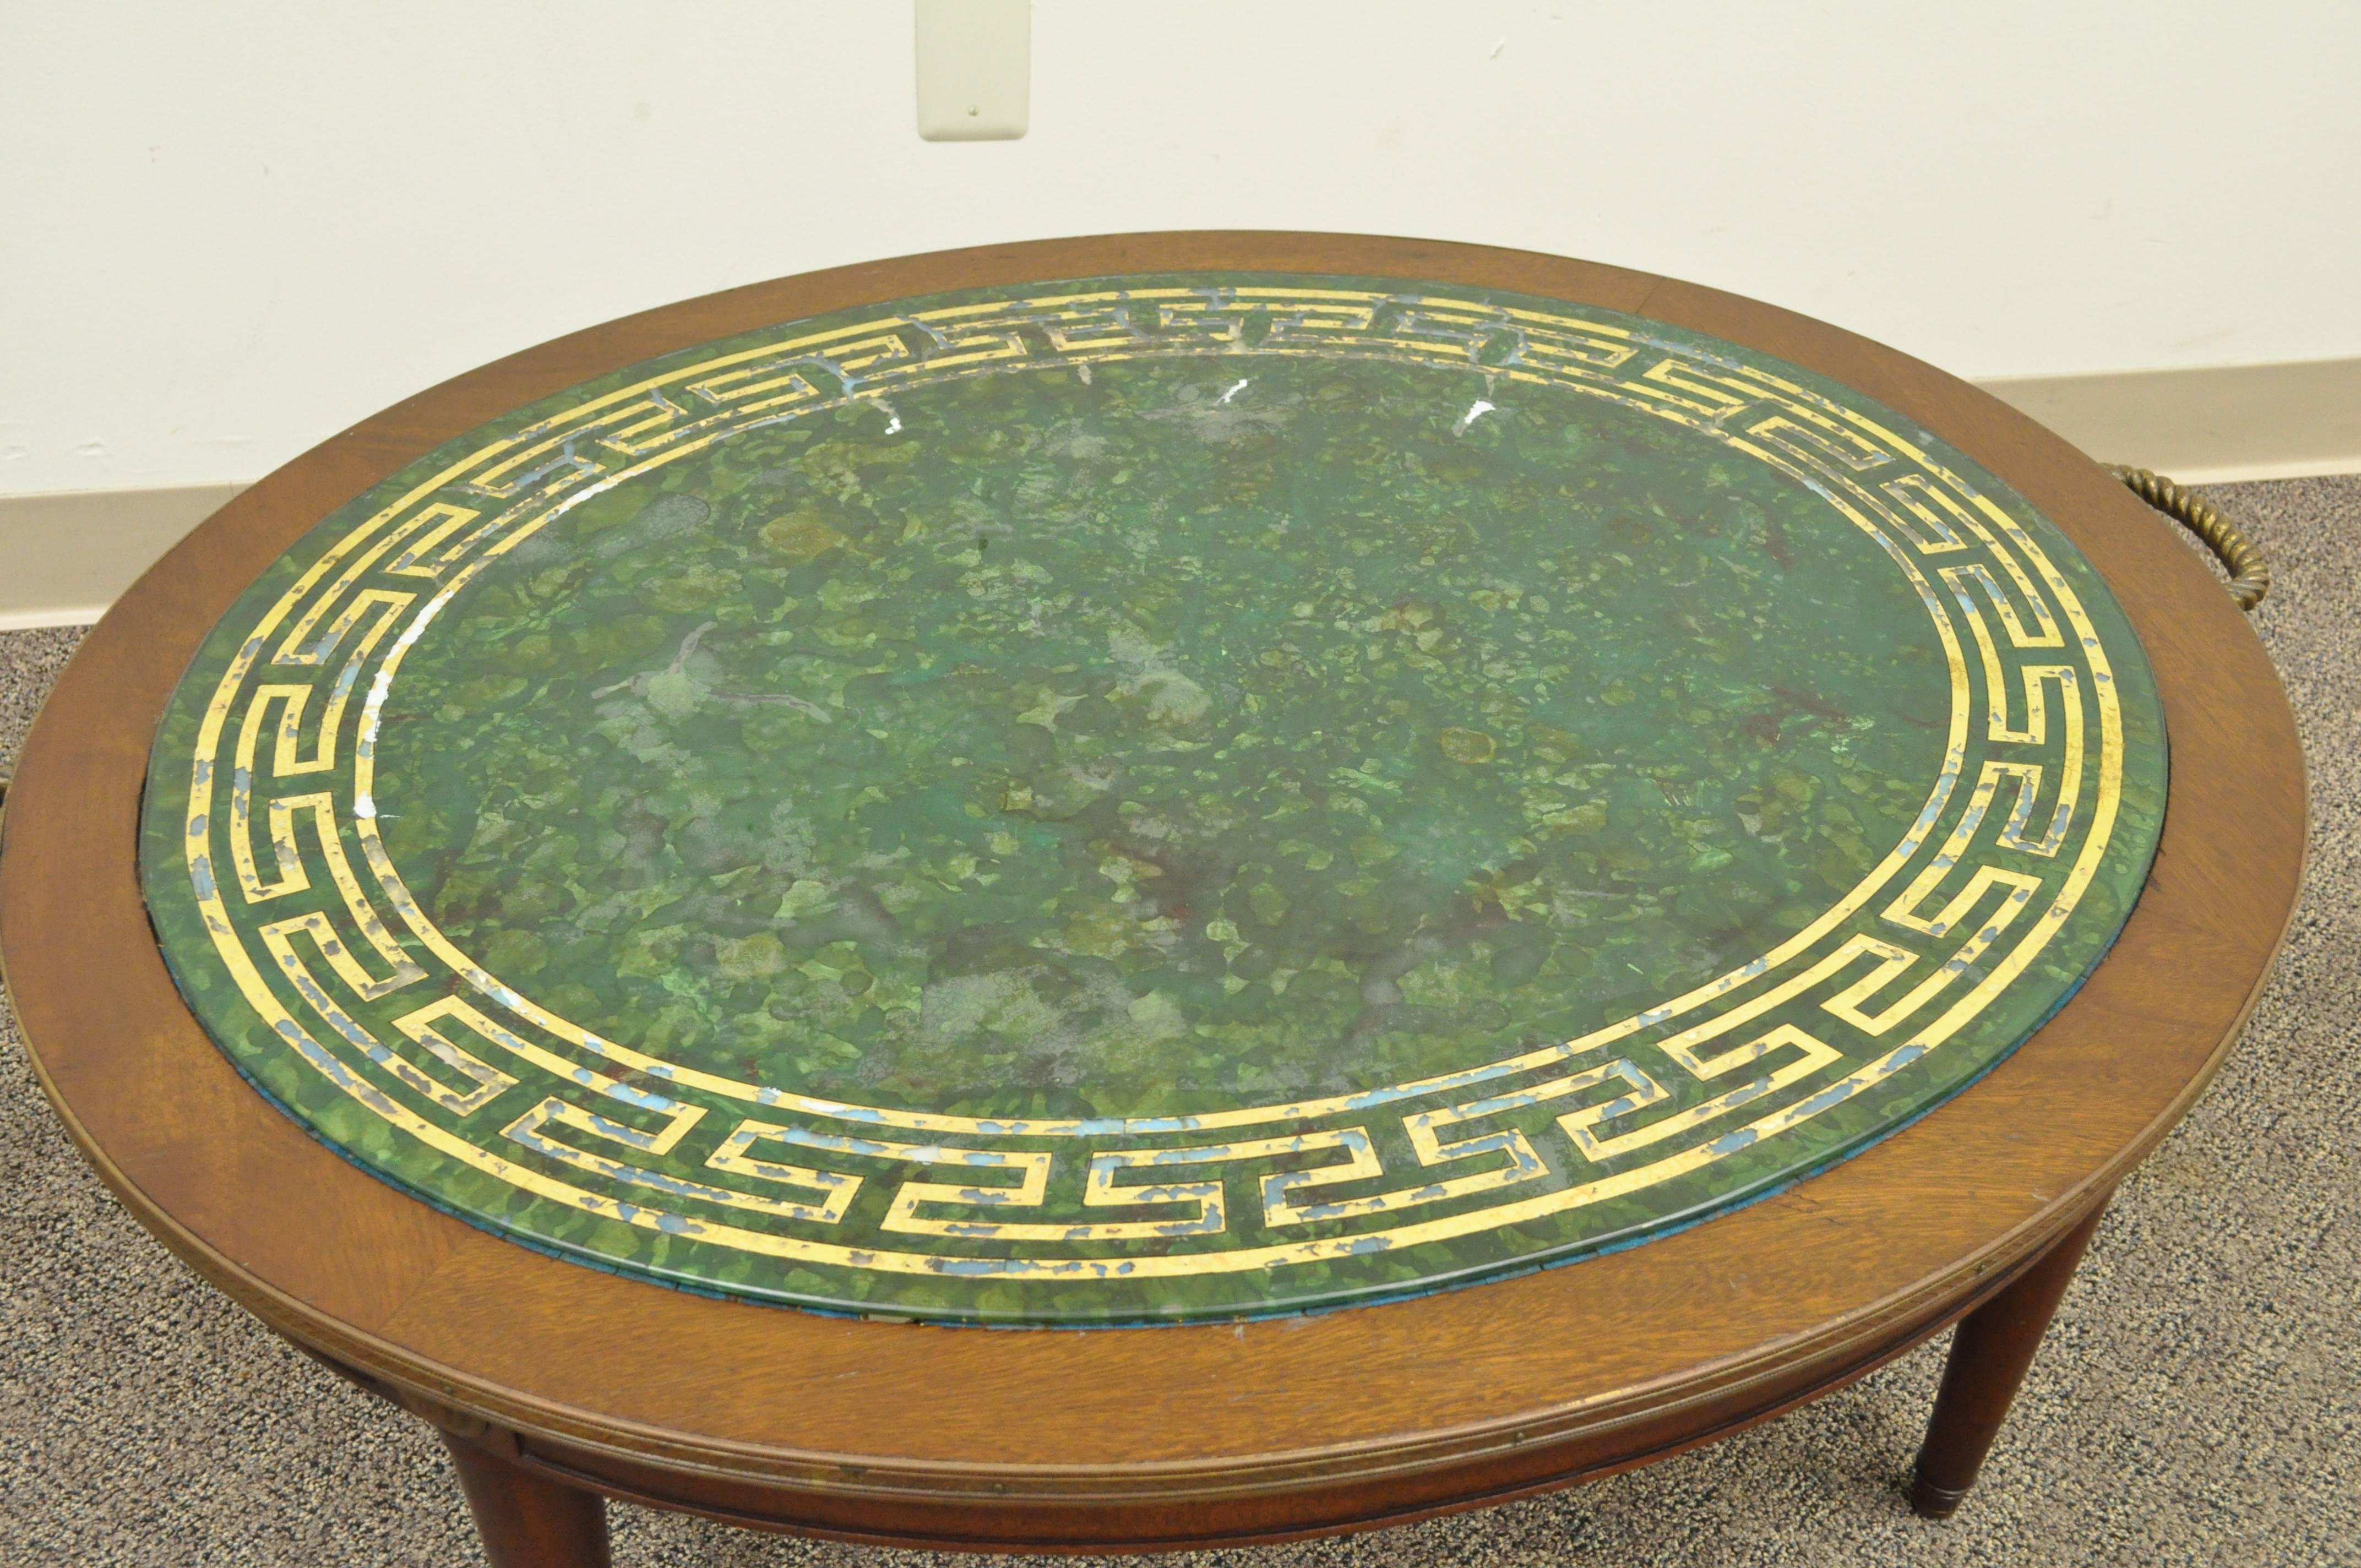 Table basse ovale vintage unique en acajou et verre décoré à l'envers, avec clé grecque et faux motif de malachite sur le dessus. L'objet est doté de poignées en laiton, d'une bordure décorative en laiton et d'une grande forme néoclassique.